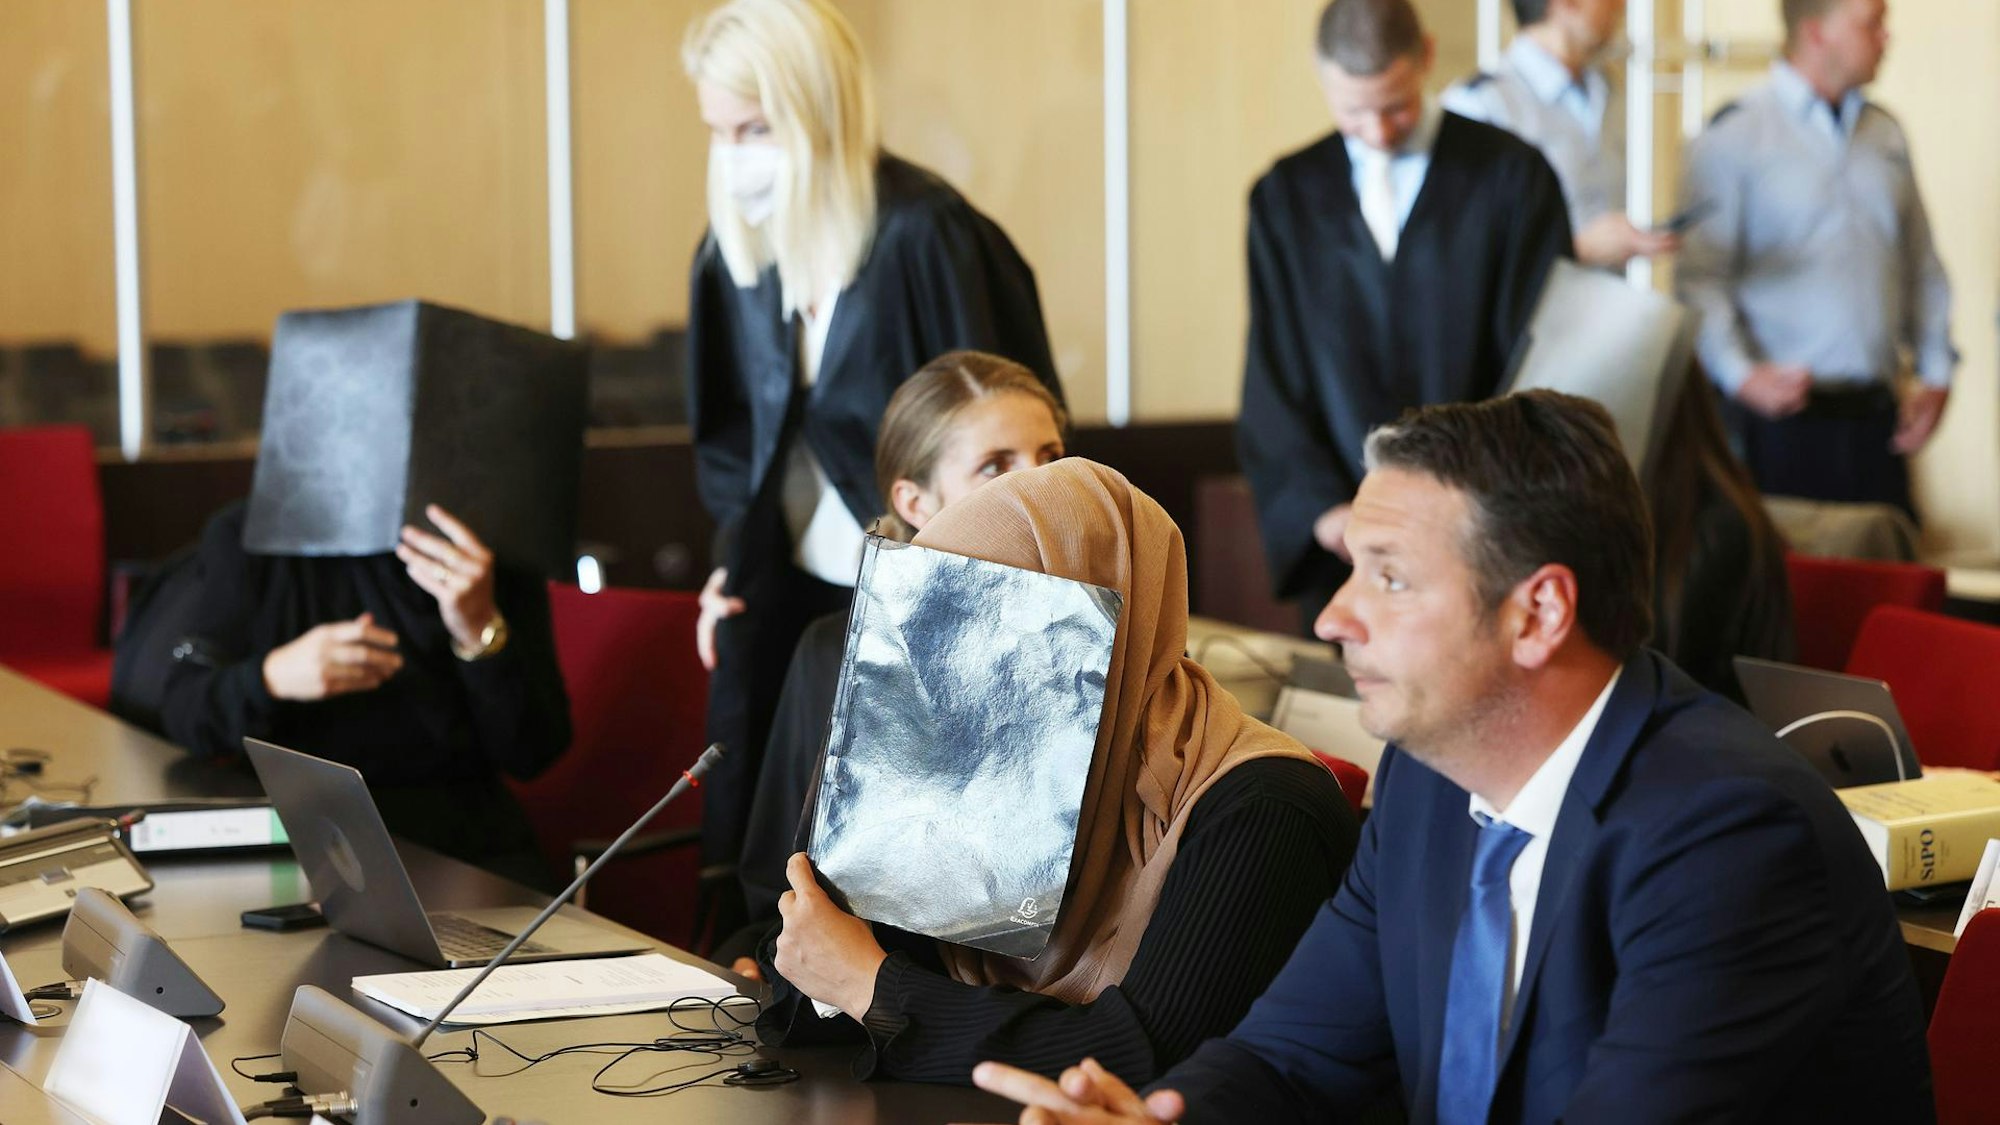 Ein Gerichtssaal: eine Frau mit Kopftuch hält sich eine Kladde vors Gesicht, daneben Anwälte.